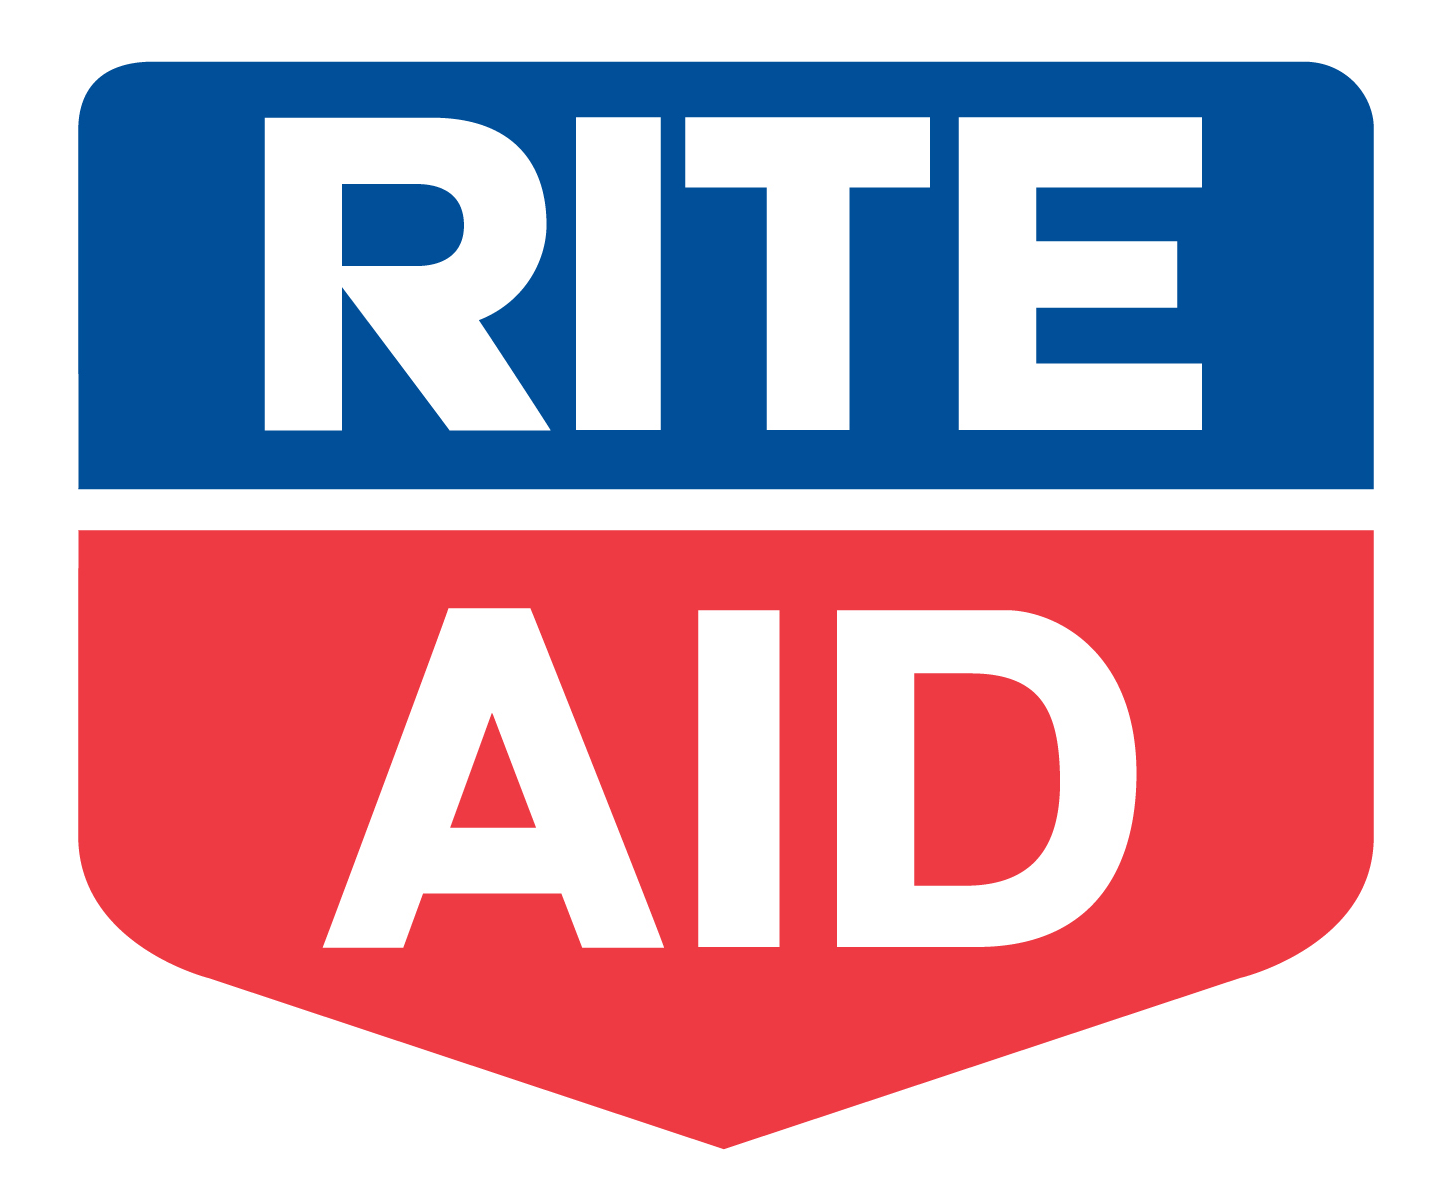 Red Rite Logo - Rite Aid Logo PNG Image - PurePNG | Free transparent CC0 PNG Image ...